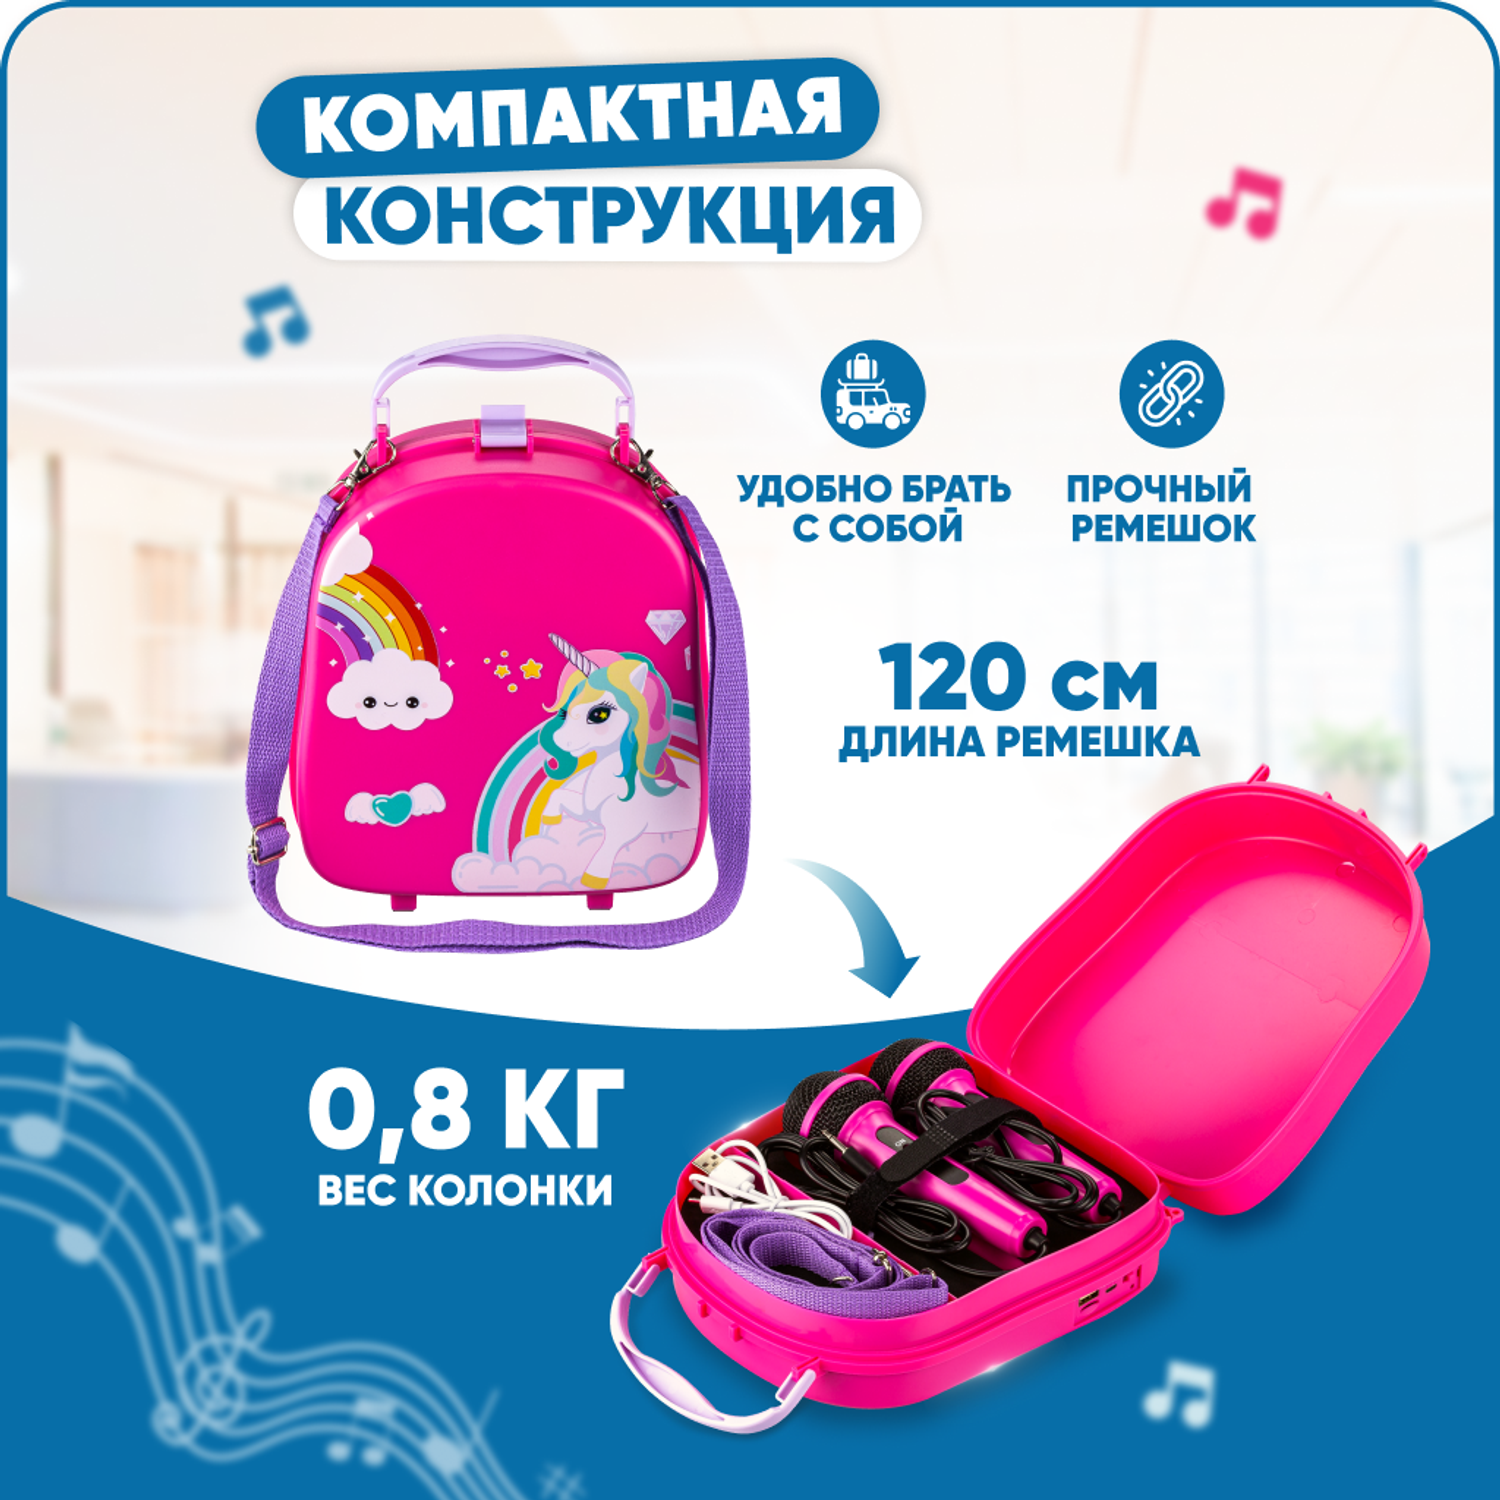 Караоке-рюкзачок для детей Solmax с микрофоном и колонкой Bluetooth розовый - фото 3